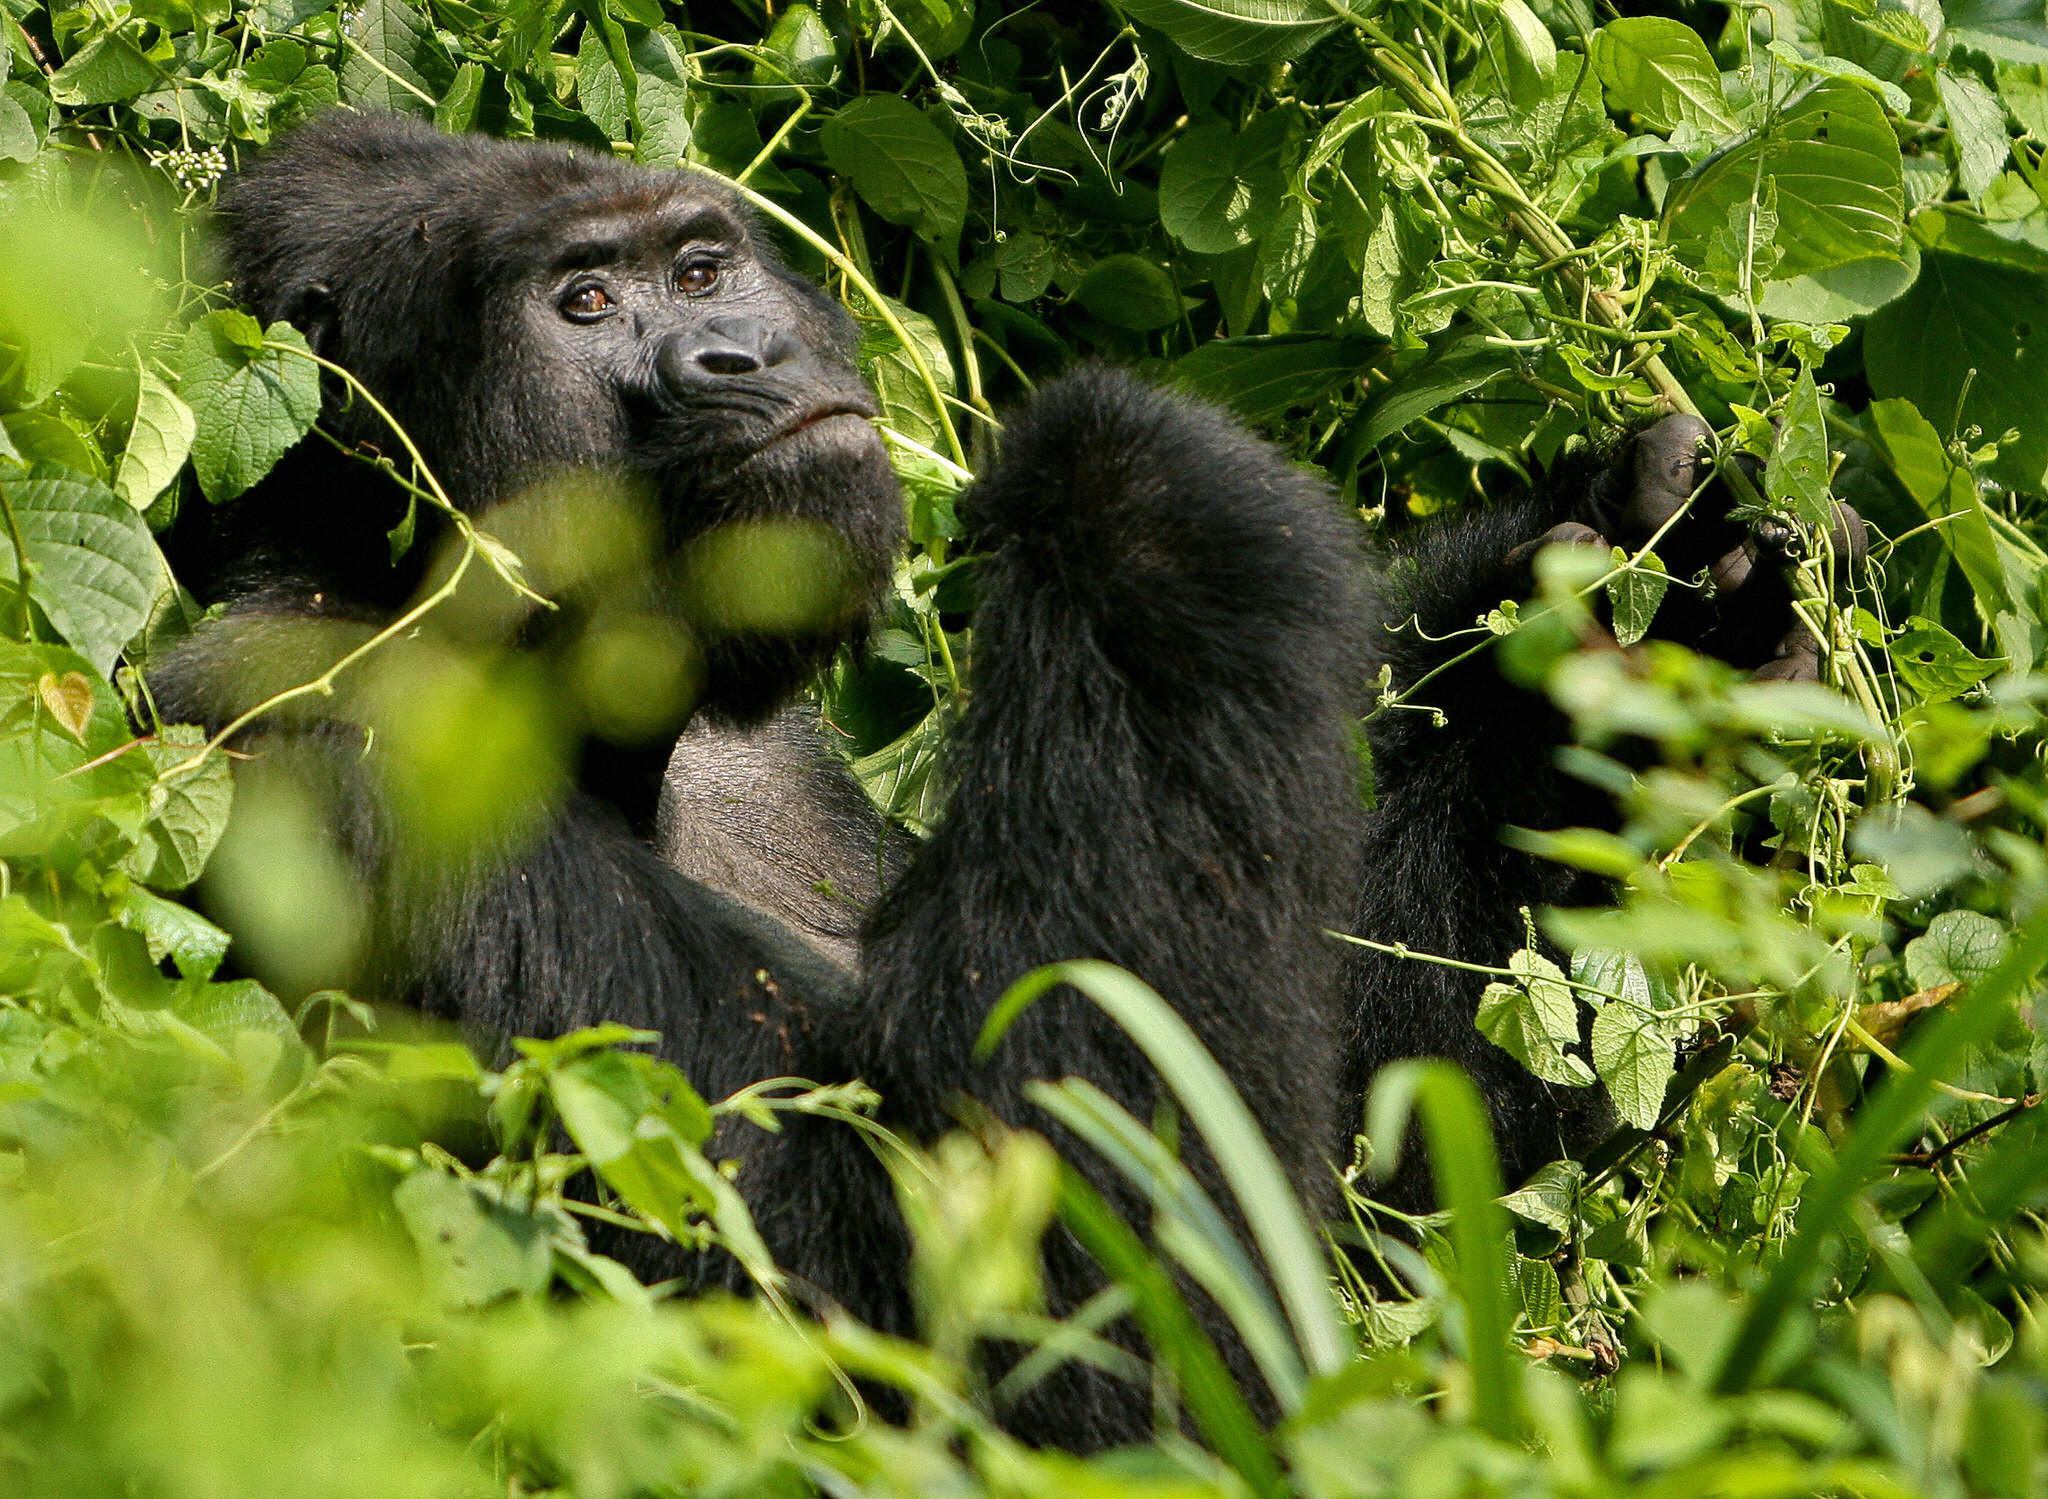 A Silverback male mountain Gorilla sits